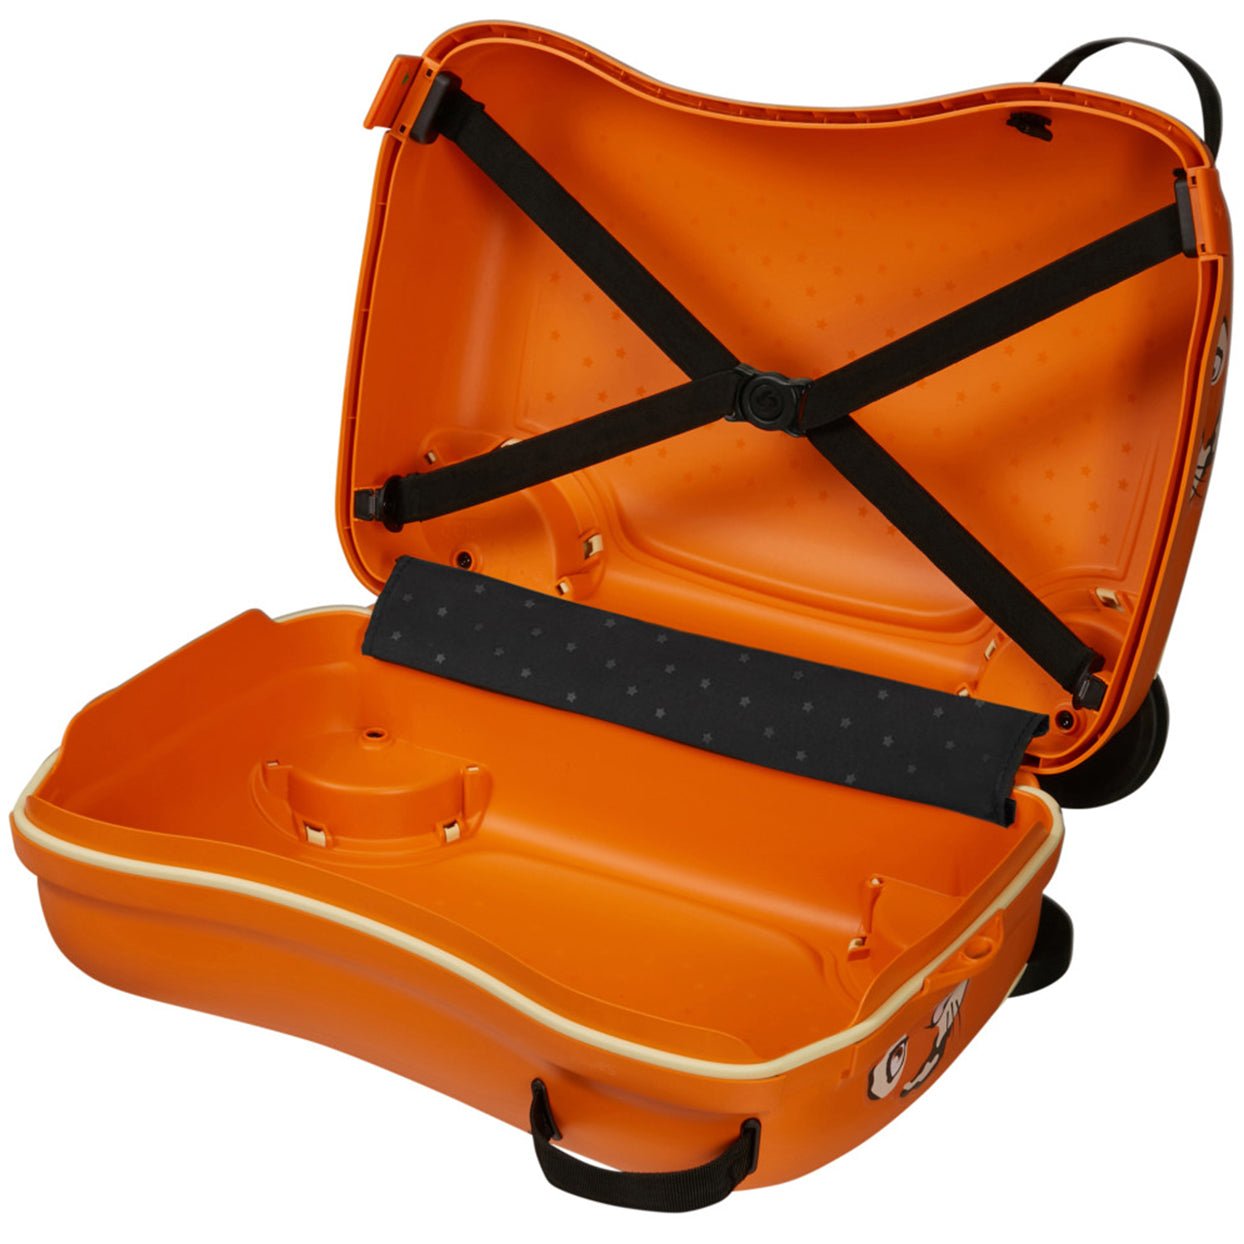 Samsonite Dream2Go Ride-On Suitcase 52 cm - Tiger T.